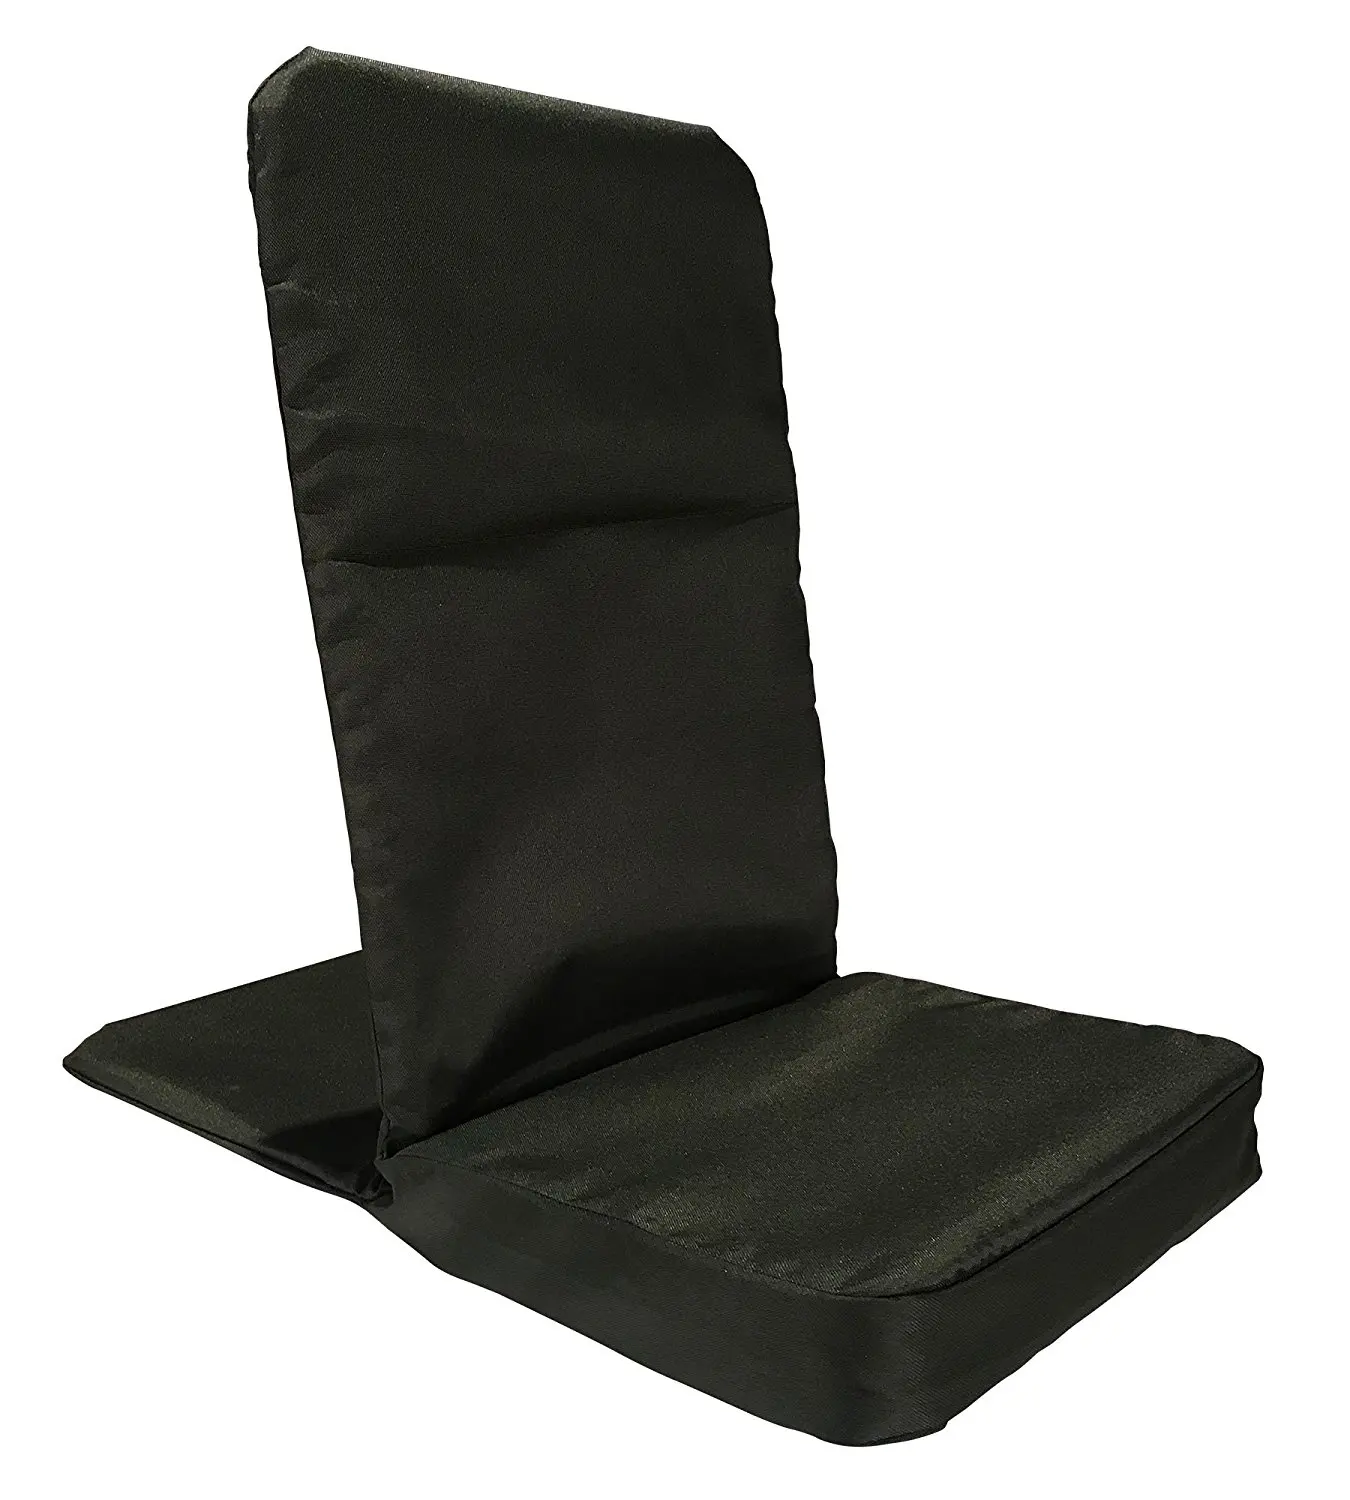 Buy Back Jack Floor Chair (Original BackJack Chairs